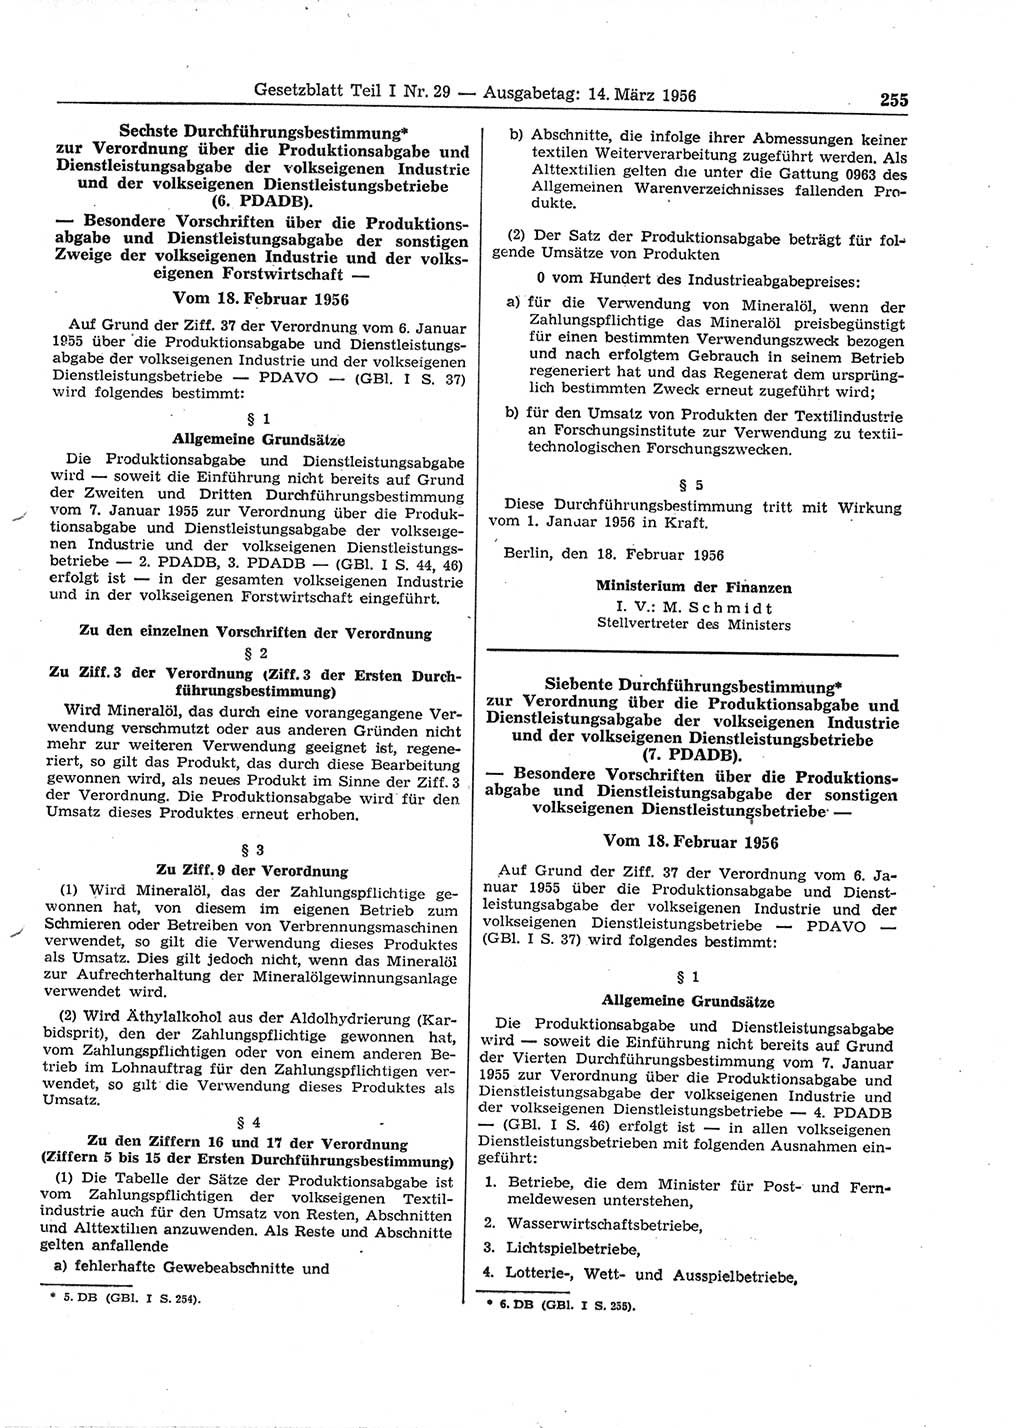 Gesetzblatt (GBl.) der Deutschen Demokratischen Republik (DDR) Teil Ⅰ 1956, Seite 255 (GBl. DDR Ⅰ 1956, S. 255)